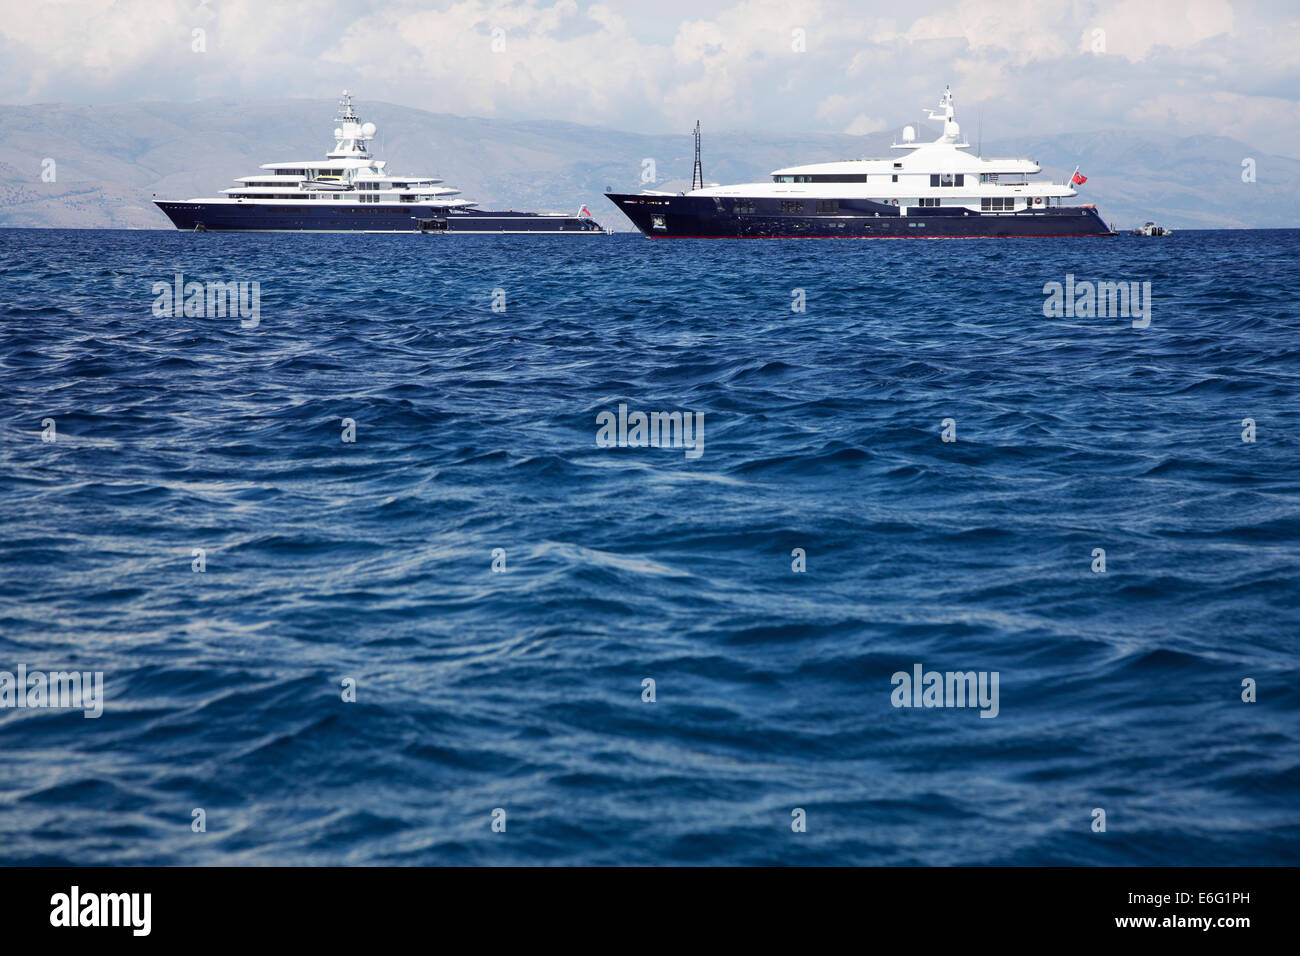 Gigantisch groß und große Luxus-yacht mit Segelboot und Helikopter Landeplatz an Bord. Anlagekonzept für Millionäre. Stockfoto